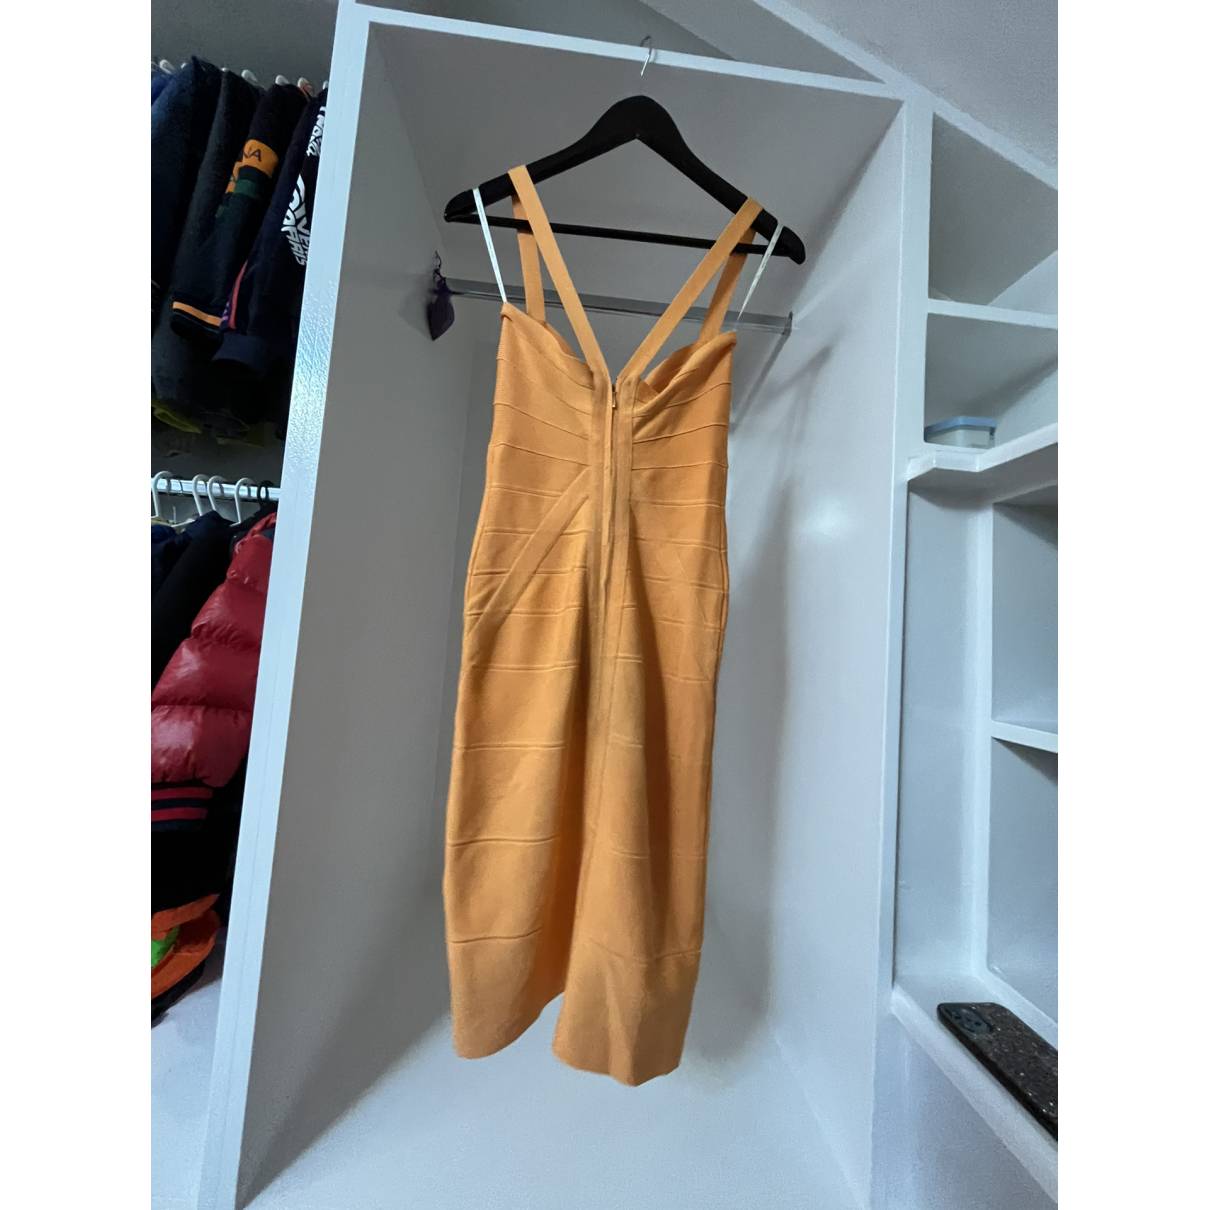 Buy Herve Leger Mid-length dress online